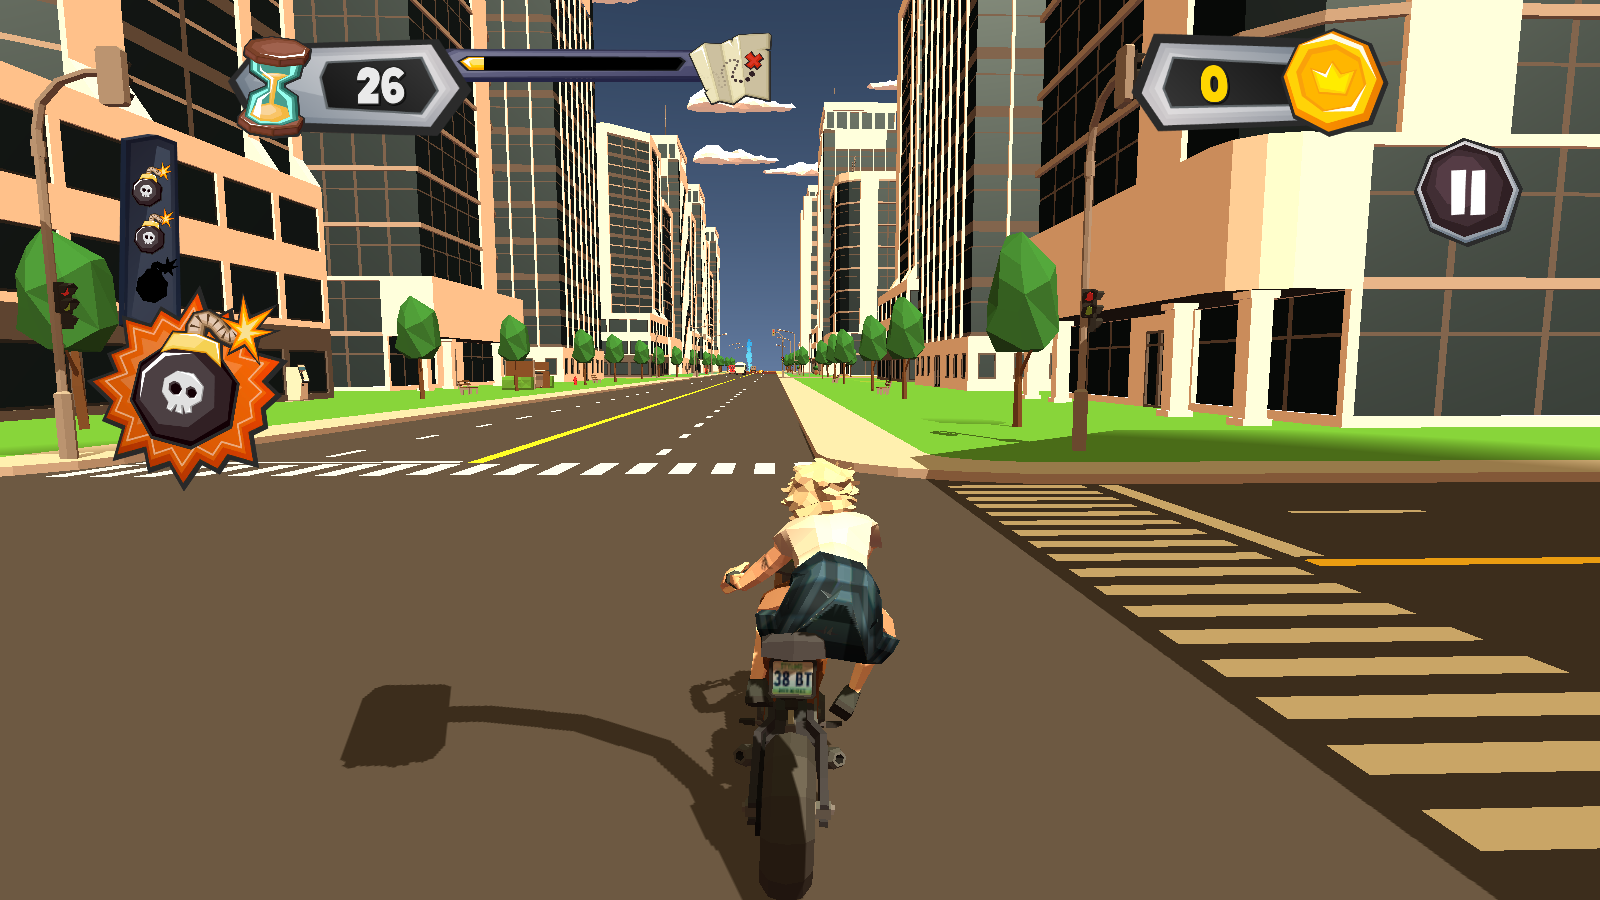 混乱交通摩托车骑士游戏无限金币v1.0.3手机版截图1